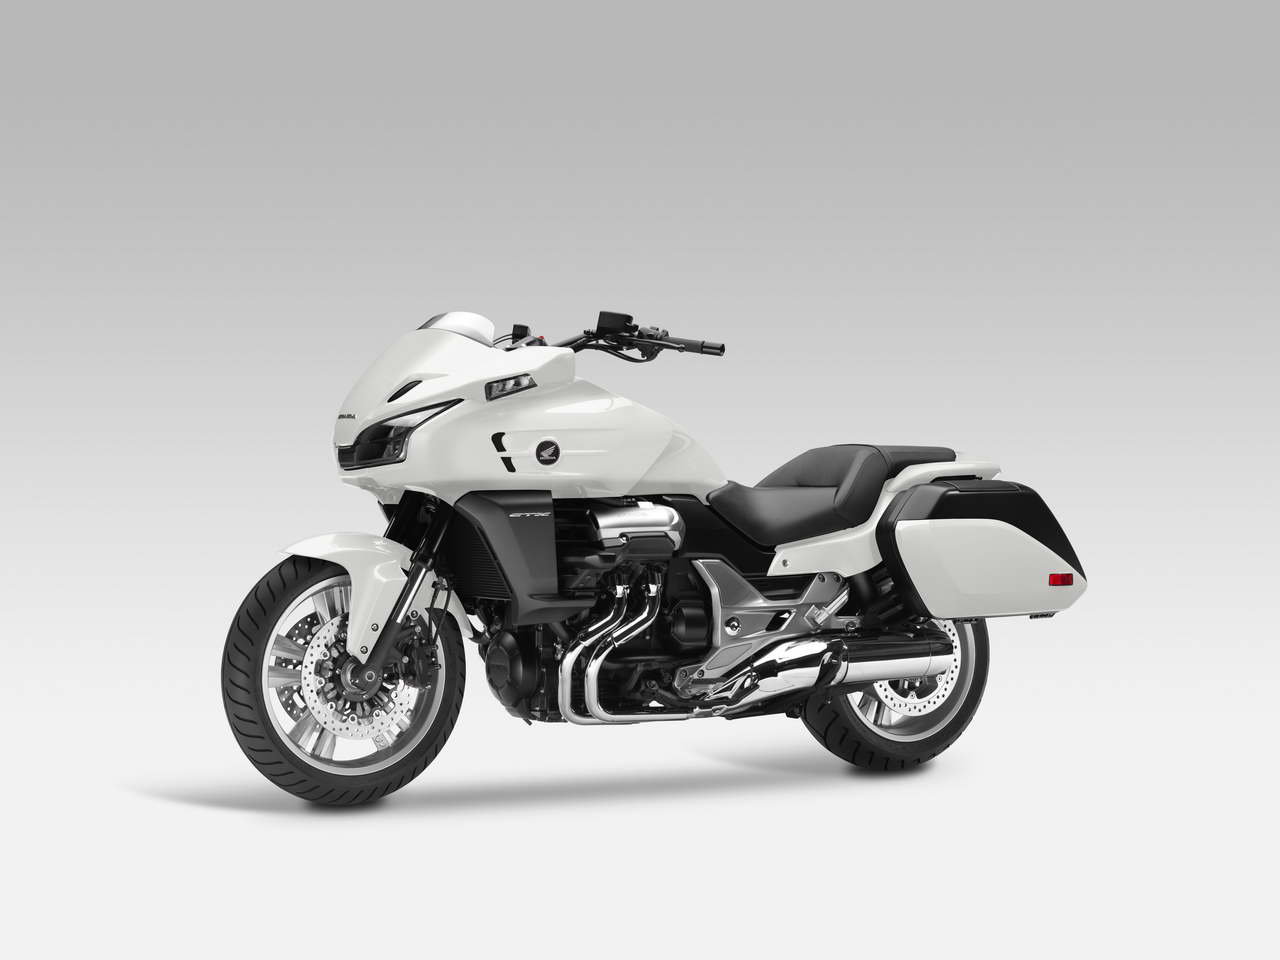 Listino Honda CTX 1300 Custom e Cruiser - image 14679_honda-ctx1300 on https://moto.motori.net